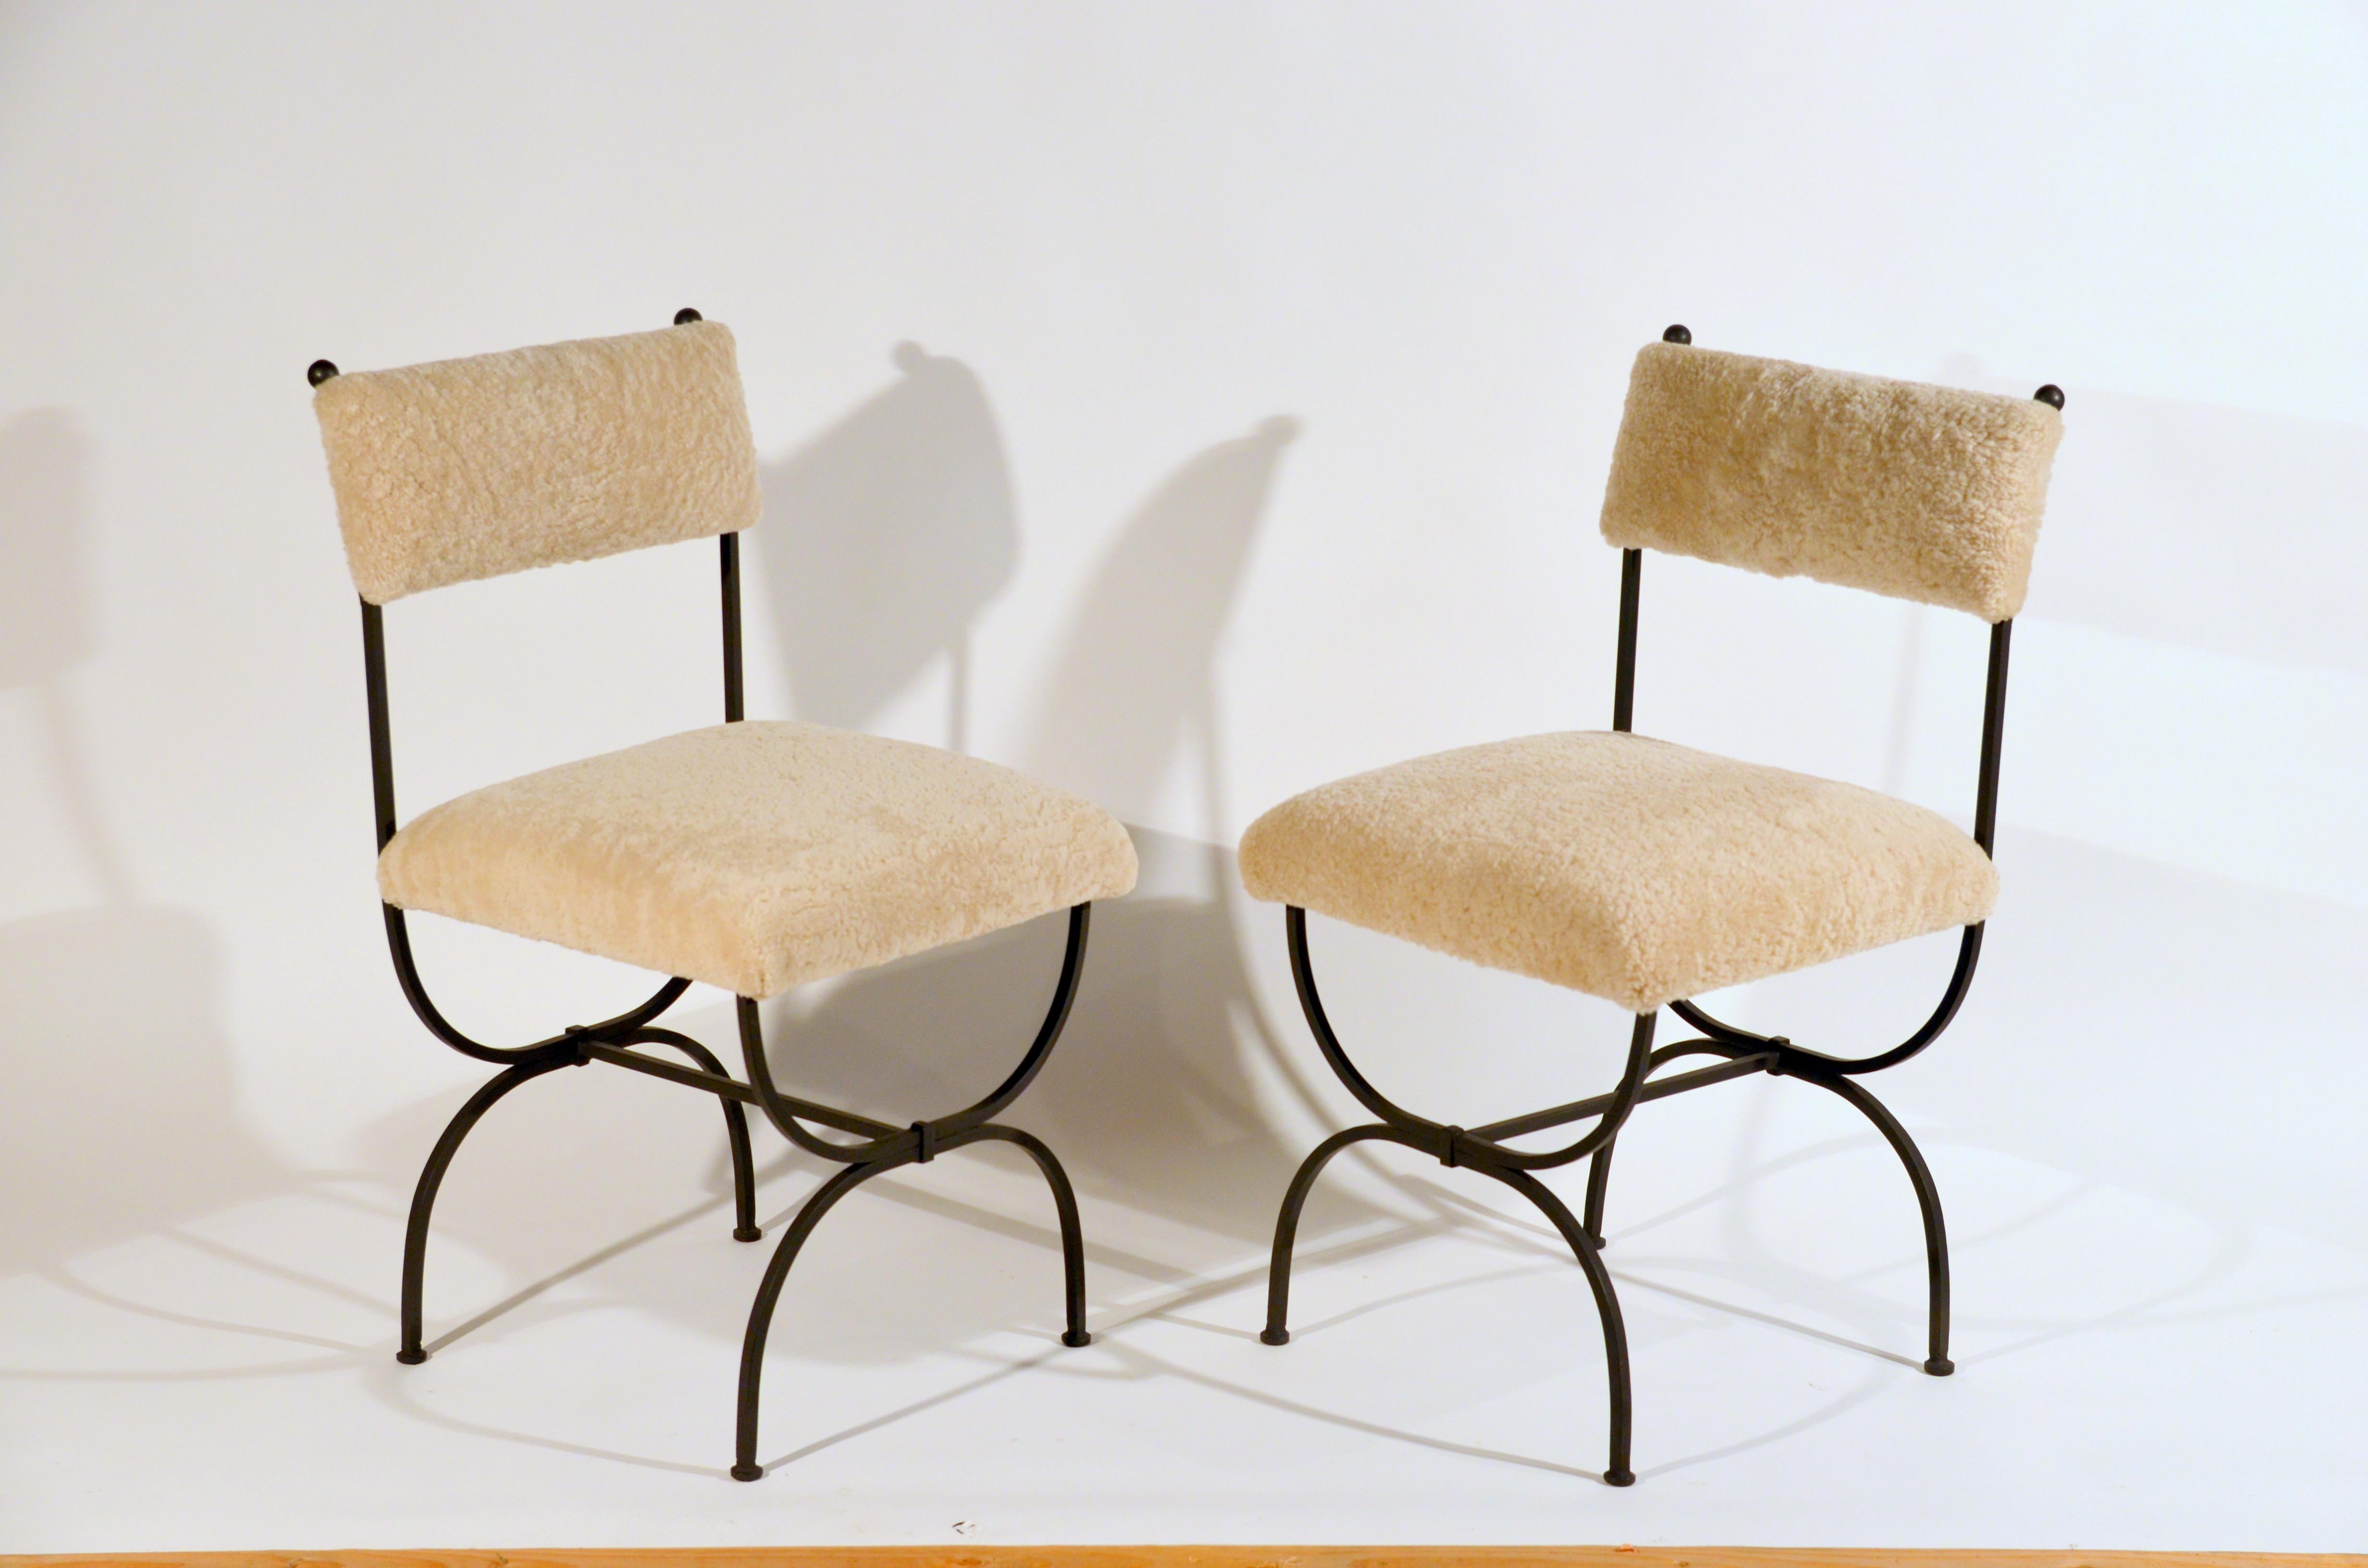 Paire de chaises chic en fer forgé et shearling 'Arcade' de Design Frères.

Extraordinaire paire de chaises d'appoint avec revêtement en shearling blanc. Ce traitement unique du rembourrage donne à ces chaises un aspect très luxueux. Les cadres en